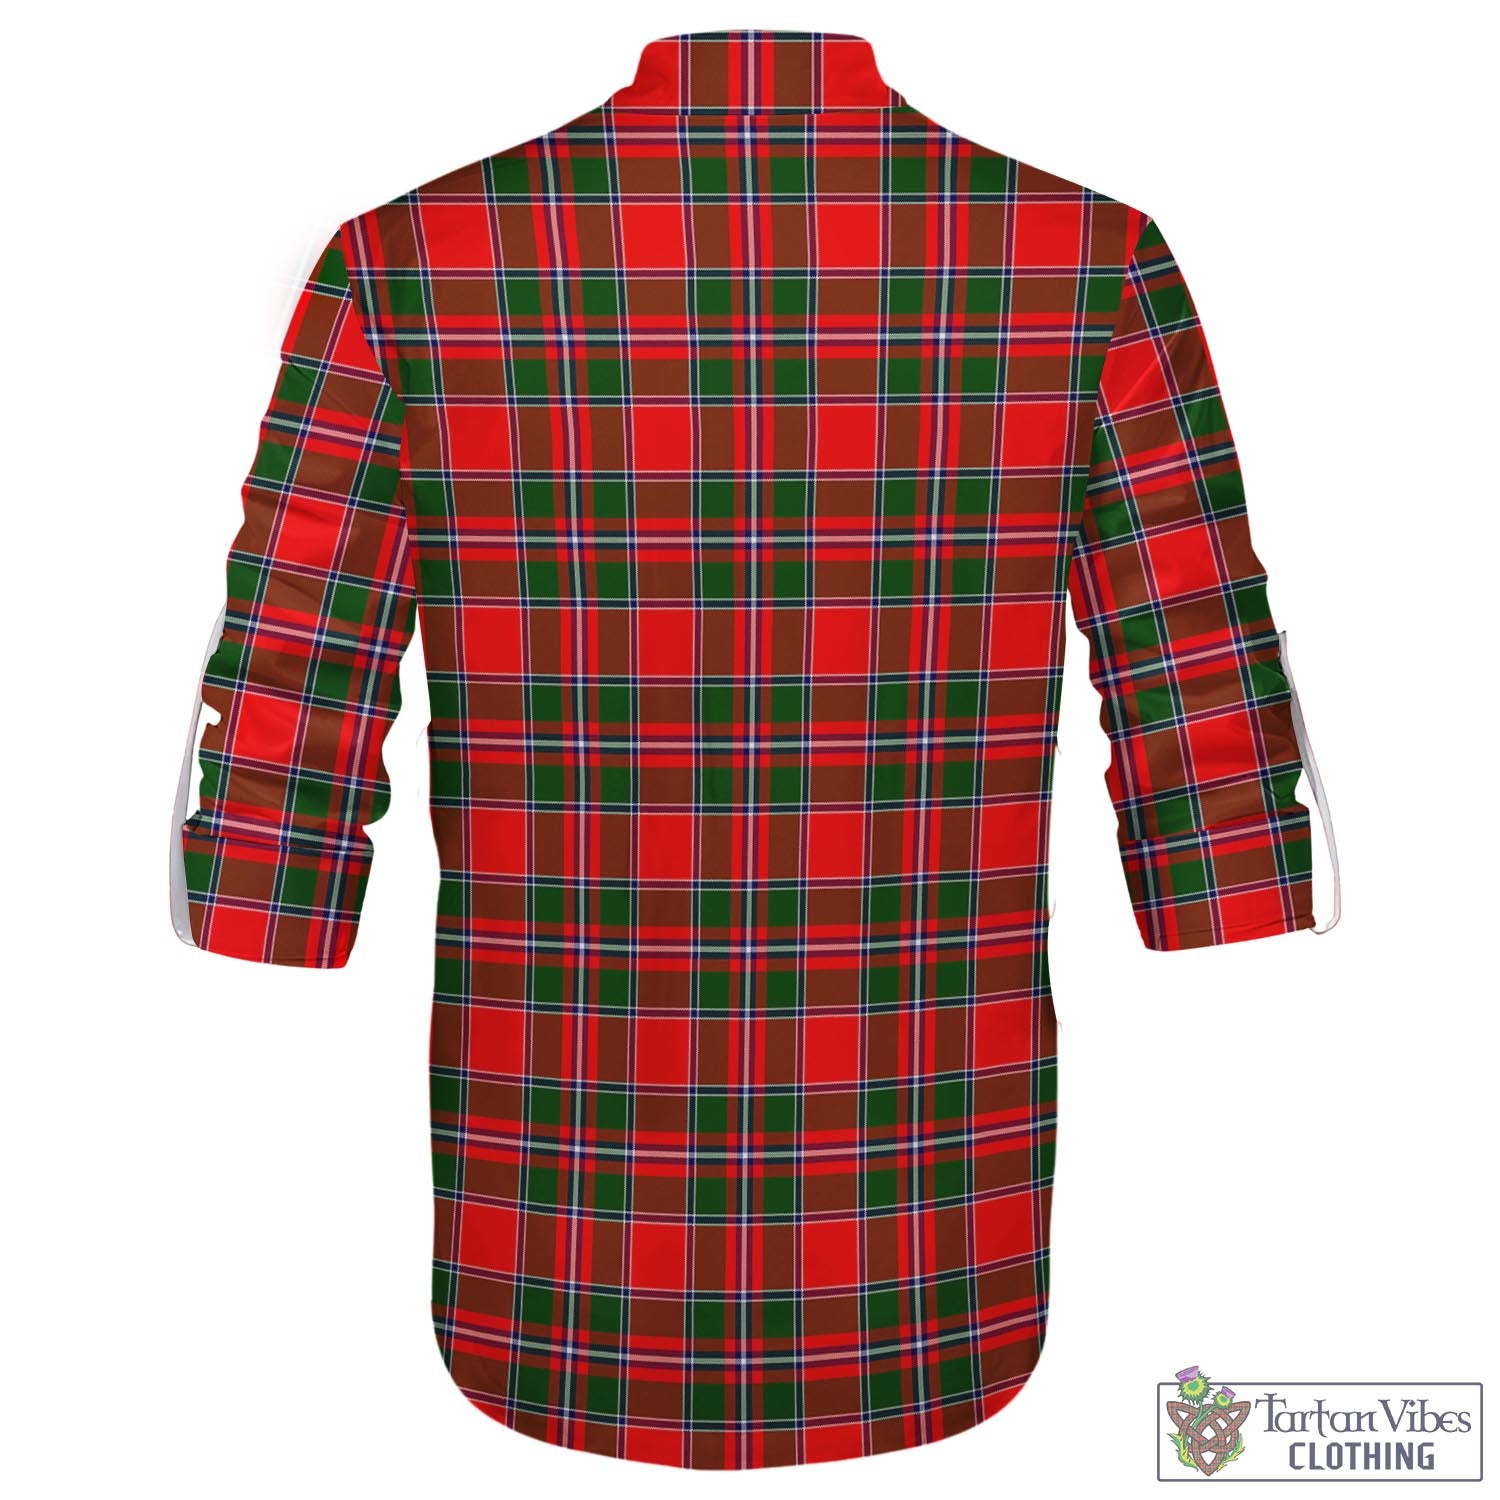 Tartan Vibes Clothing Spens Modern Tartan Men's Scottish Traditional Jacobite Ghillie Kilt Shirt with Family Crest